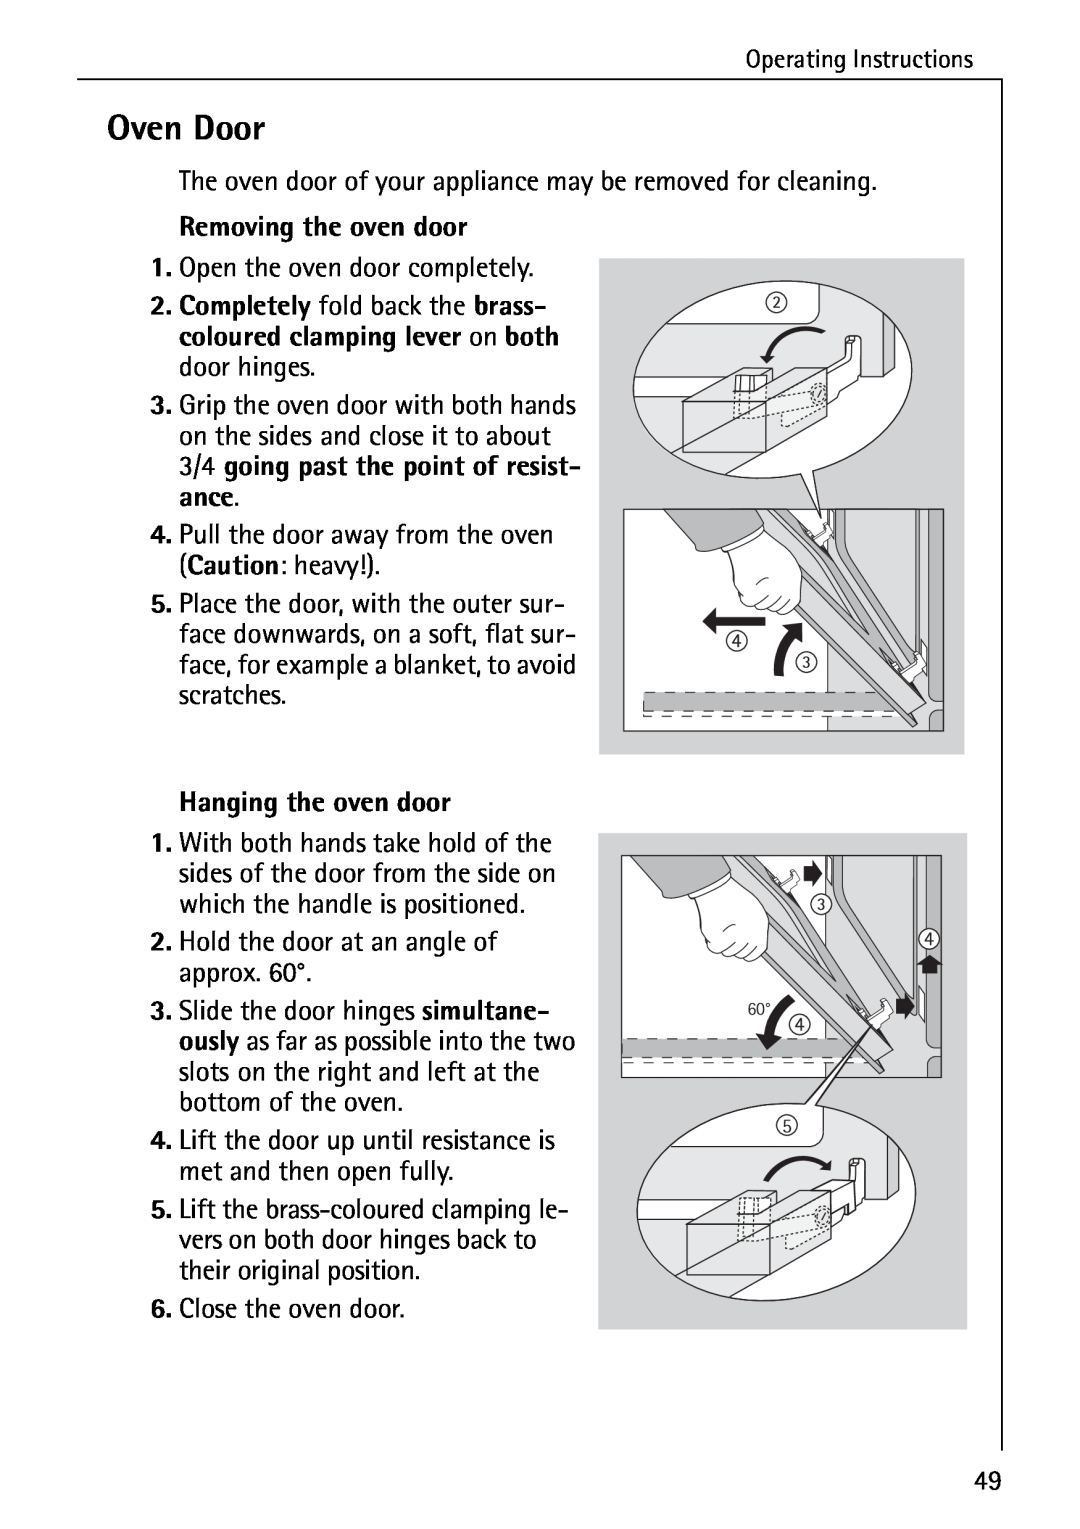 AEG E4100-1 manual Oven Door, Removing the oven door, Hanging the oven door 